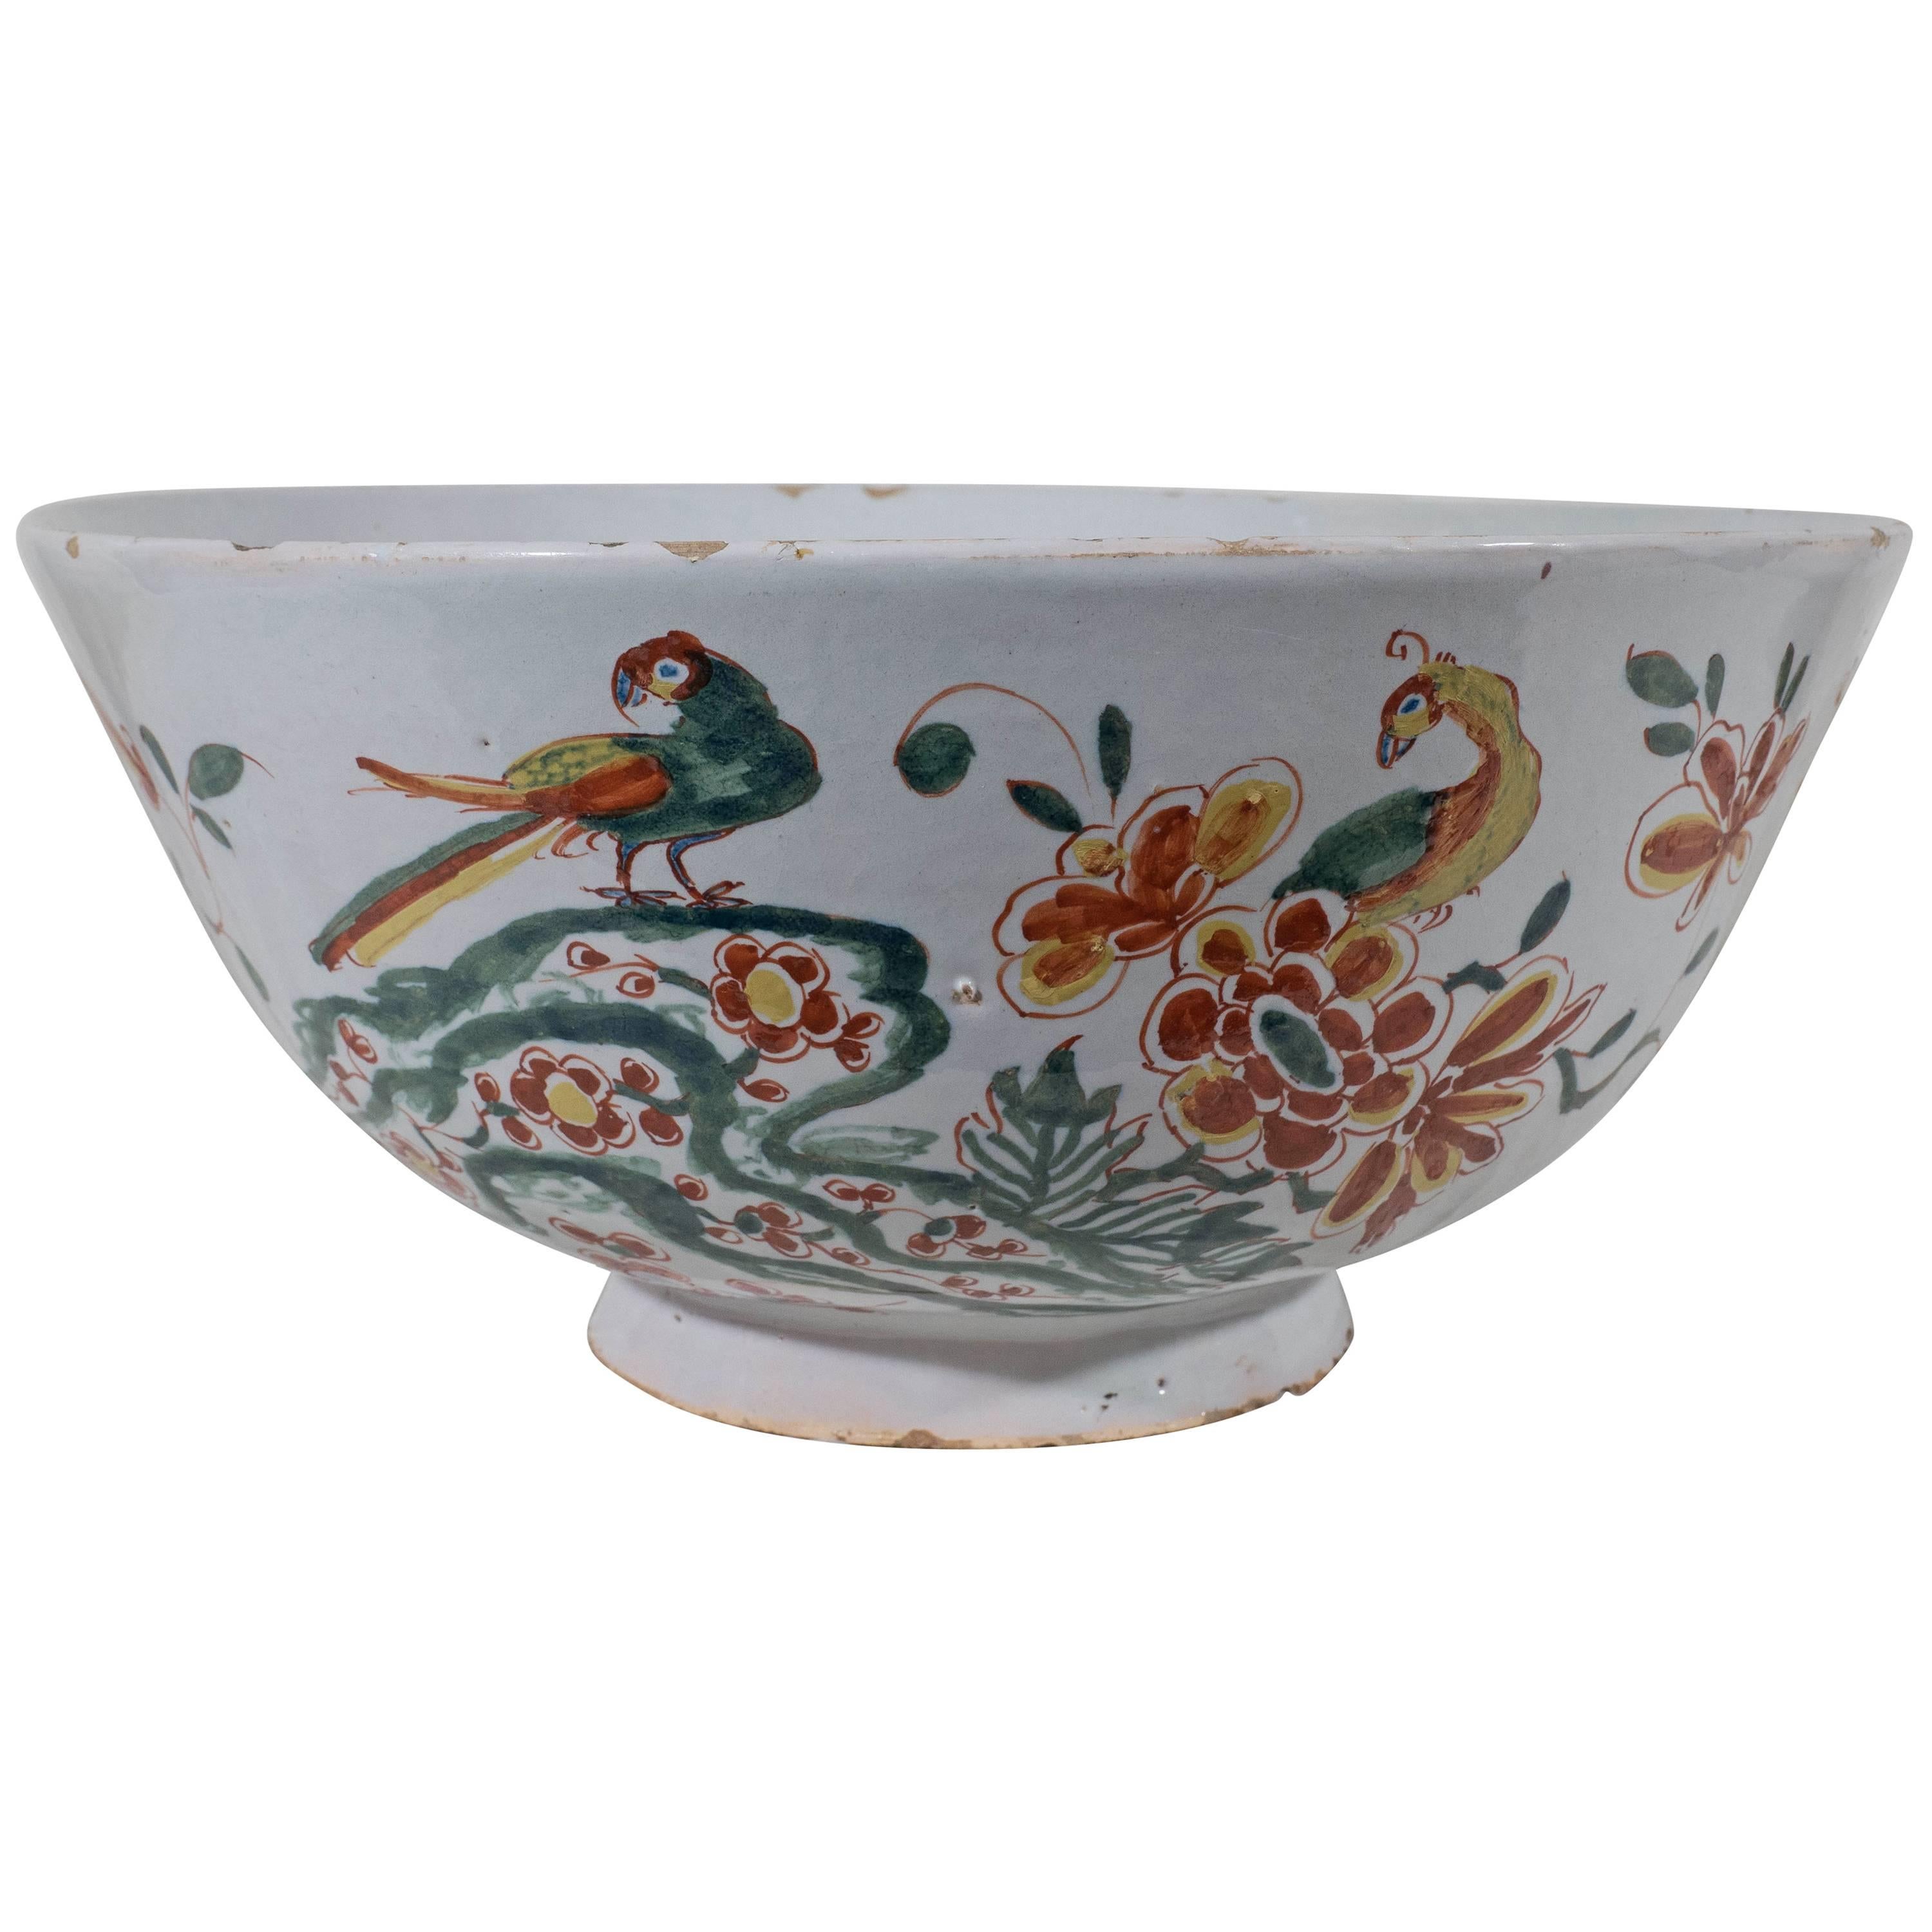 Large Antique Delft Bowl Polychrome Colors